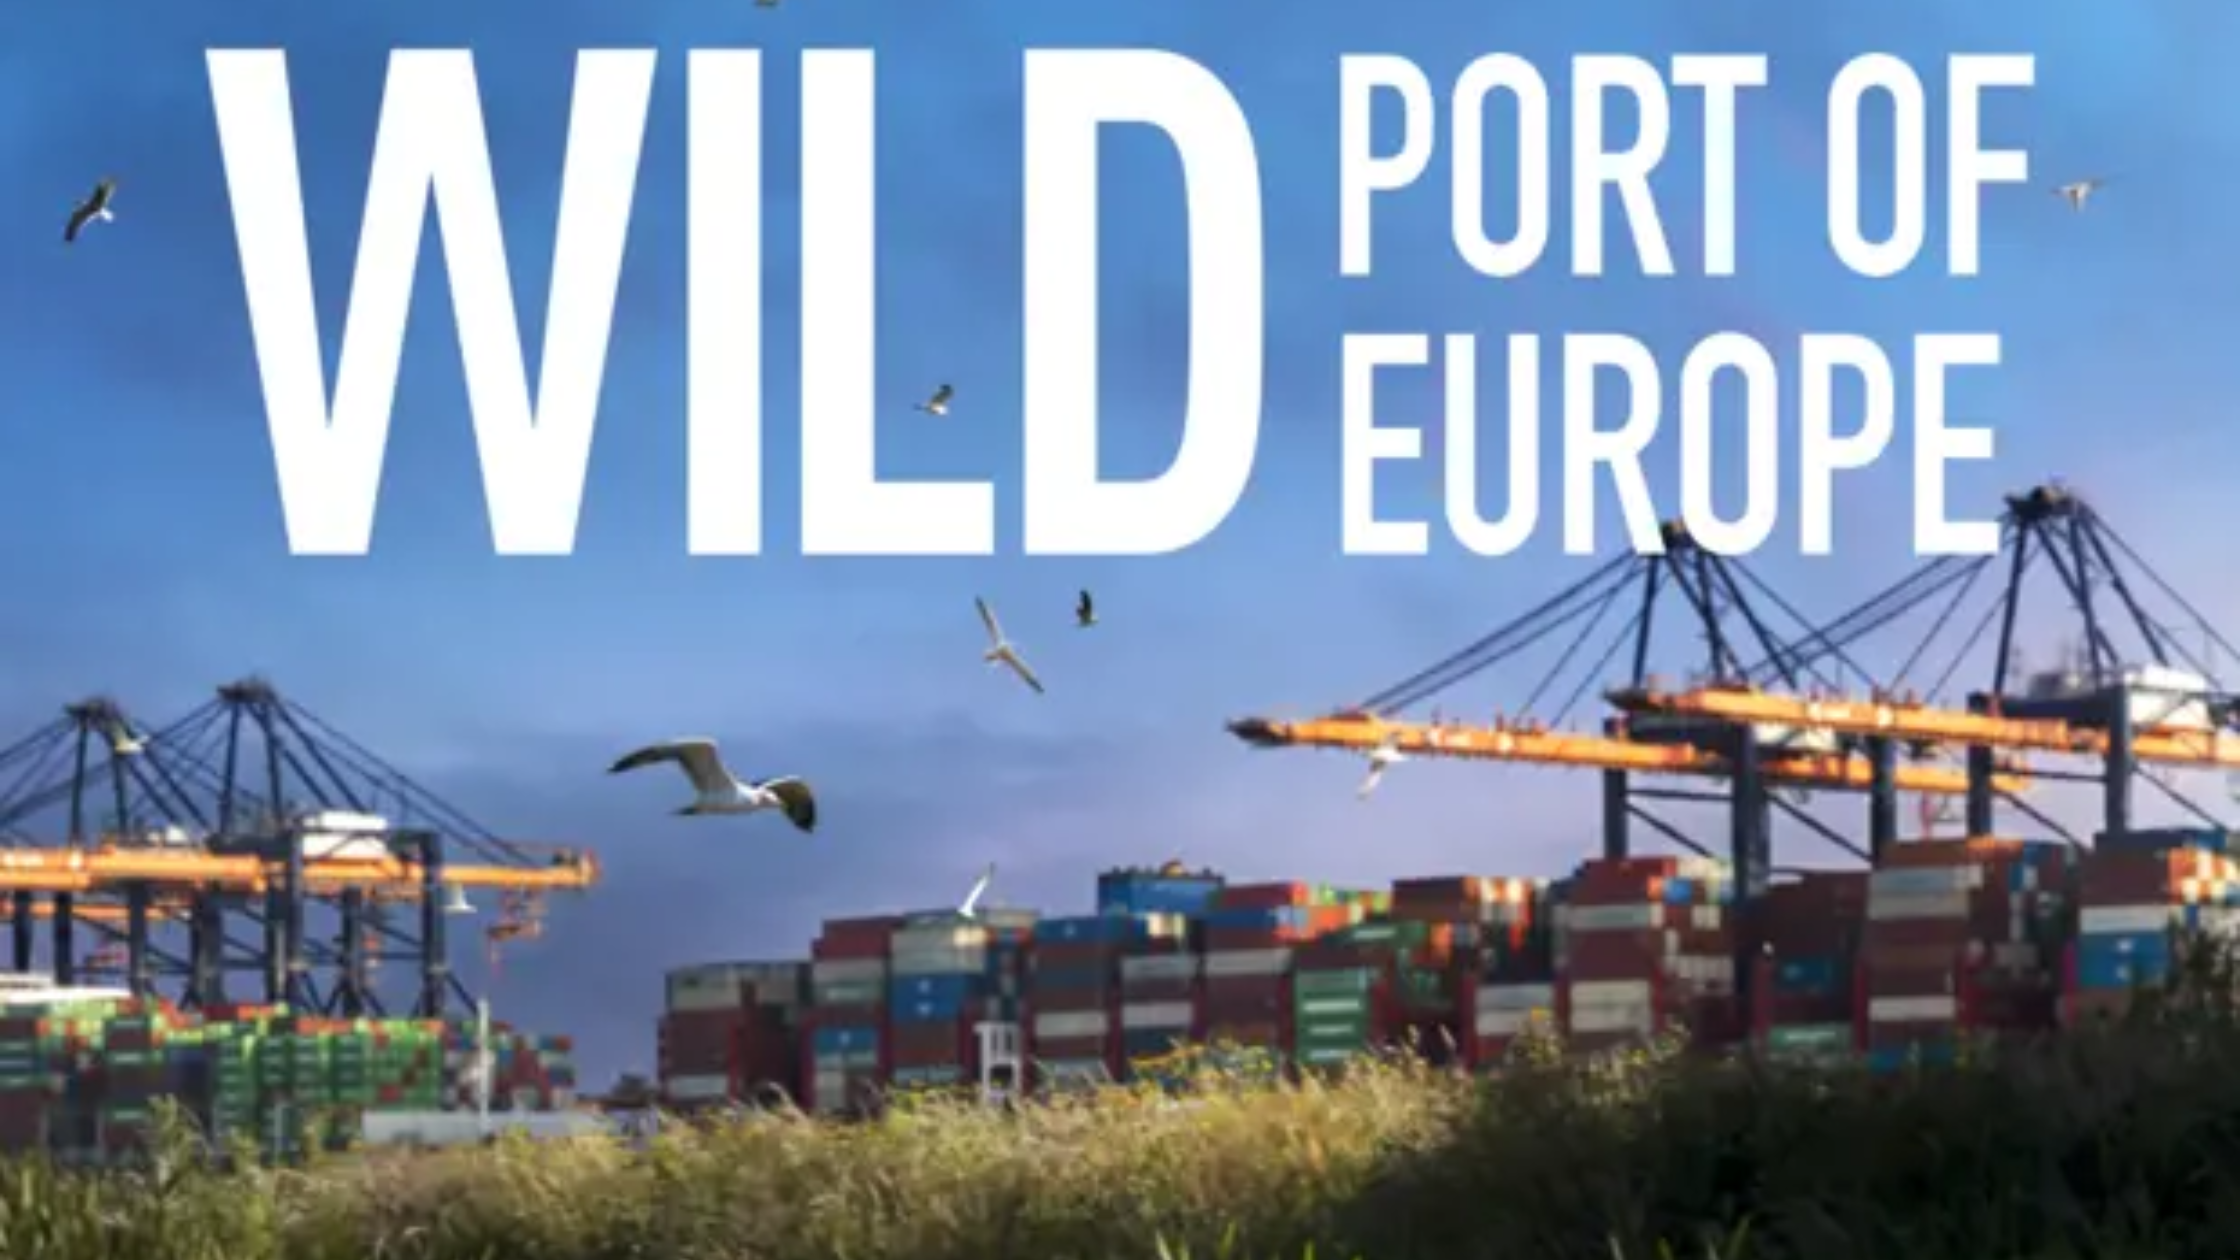 Biebfilm Wild Port of Europe + koffie en gebak